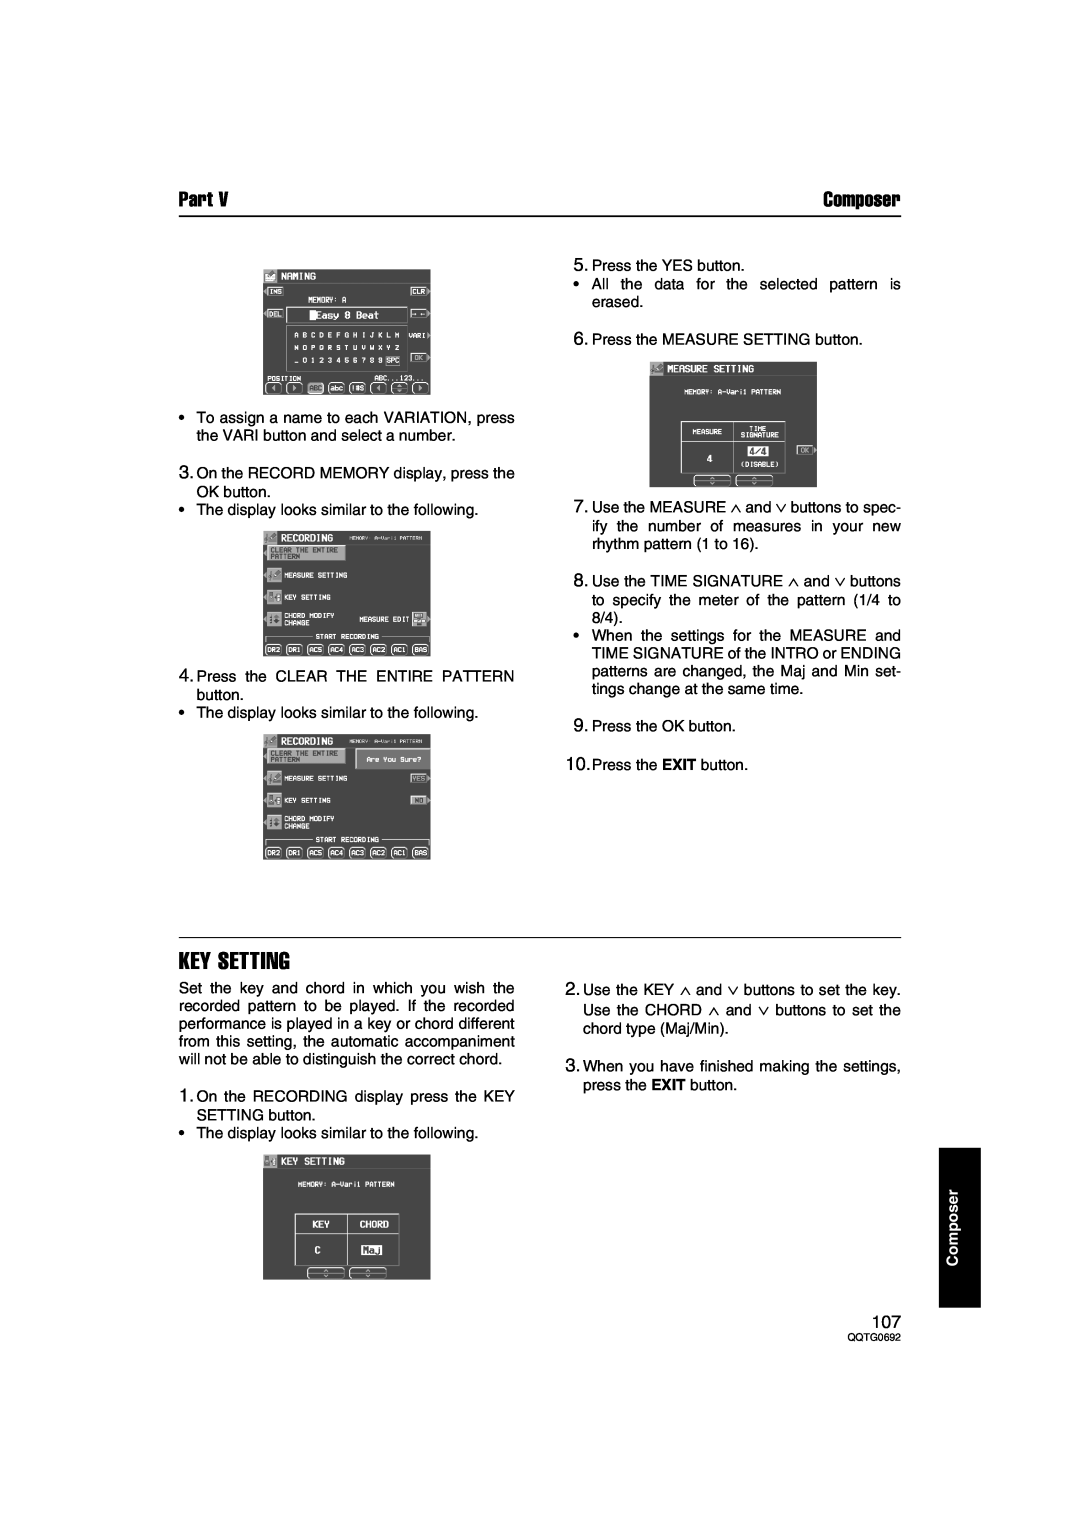 Panasonic SX-KN2400, SX-KN2600 manual Key Setting, Part, Composer 